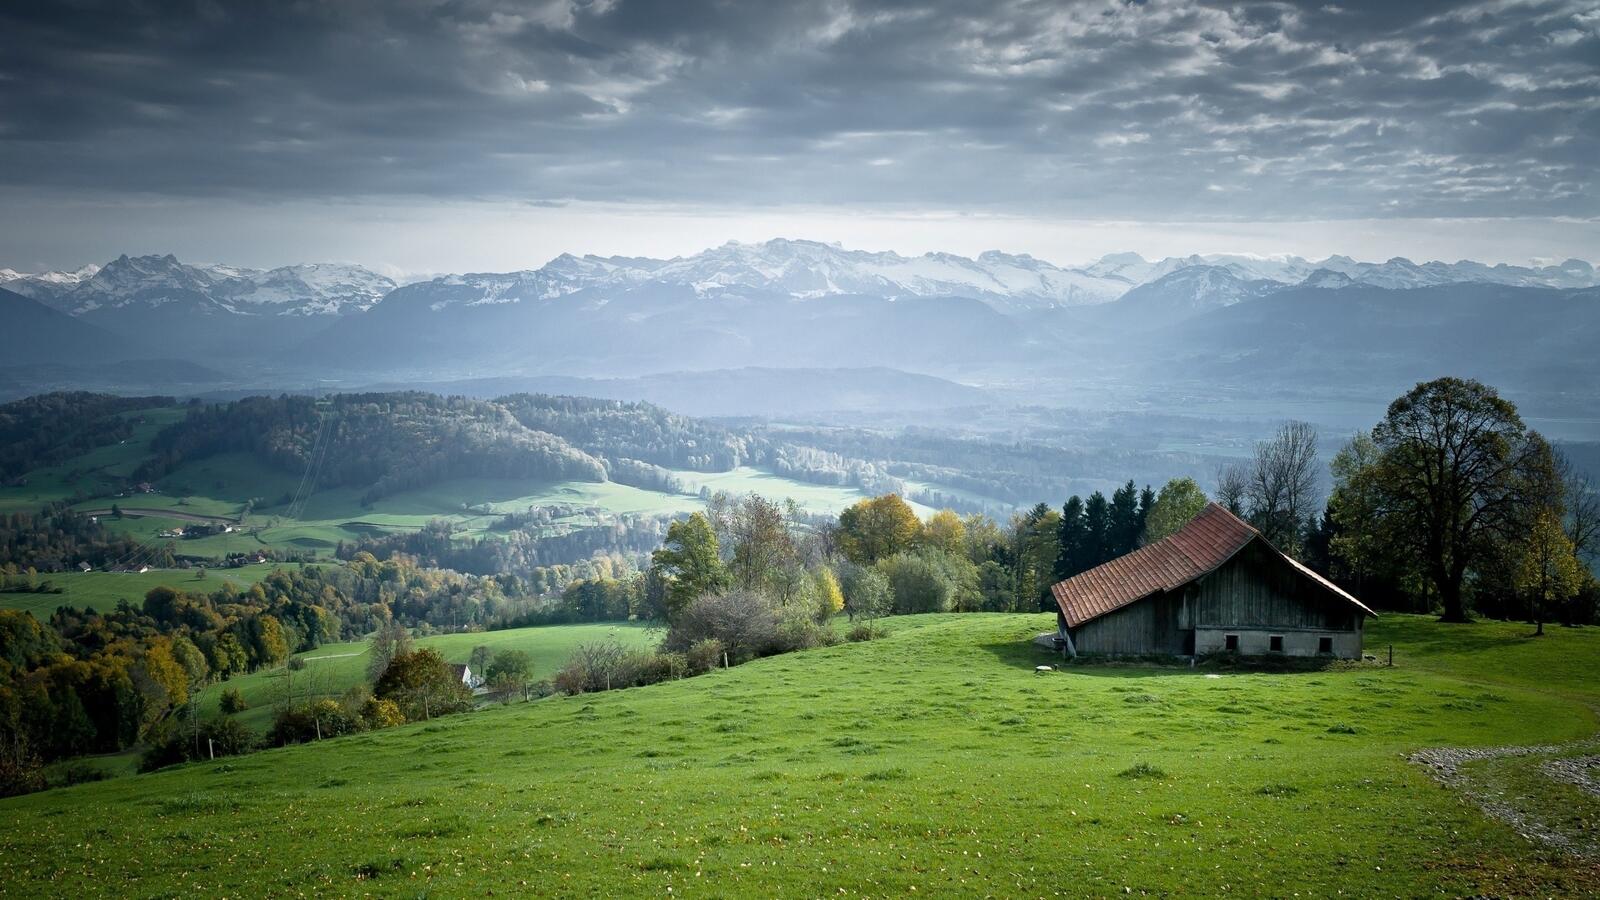 Бесплатное фото Поселок в холмистой местности на фоне гор